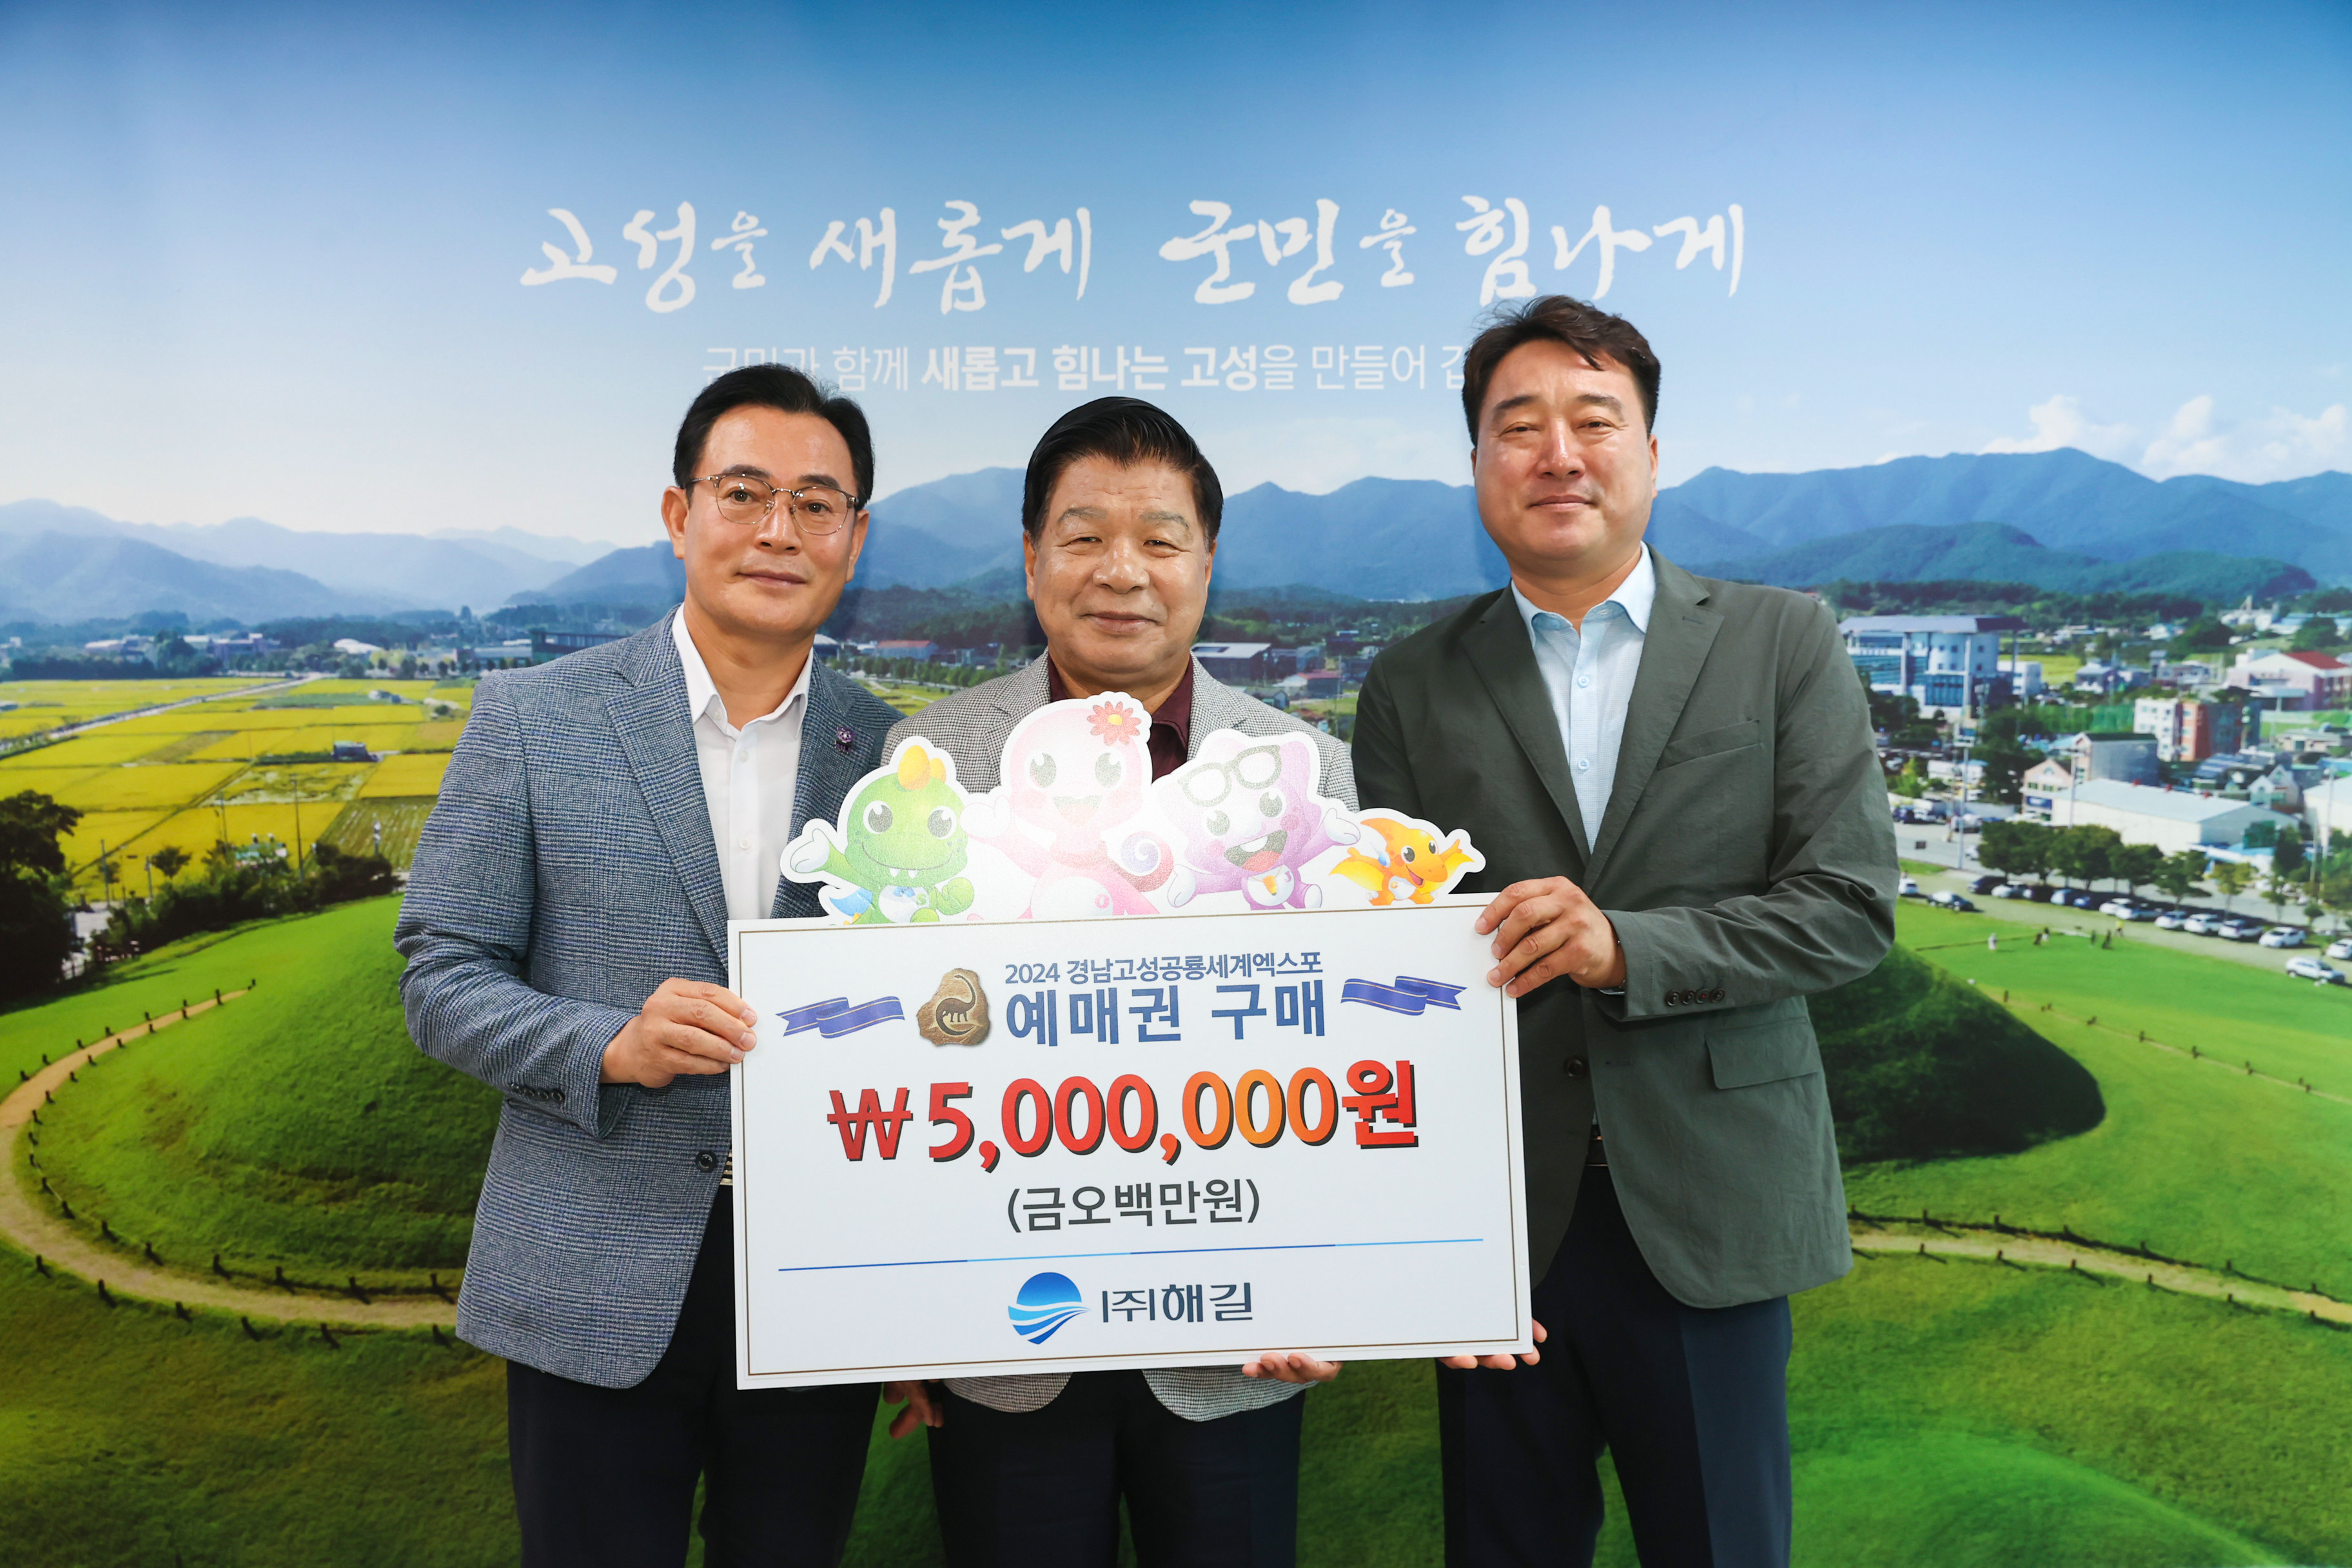 7월 18일 고성공룡세계엑스포 티켓구매(주)해길 관련자료